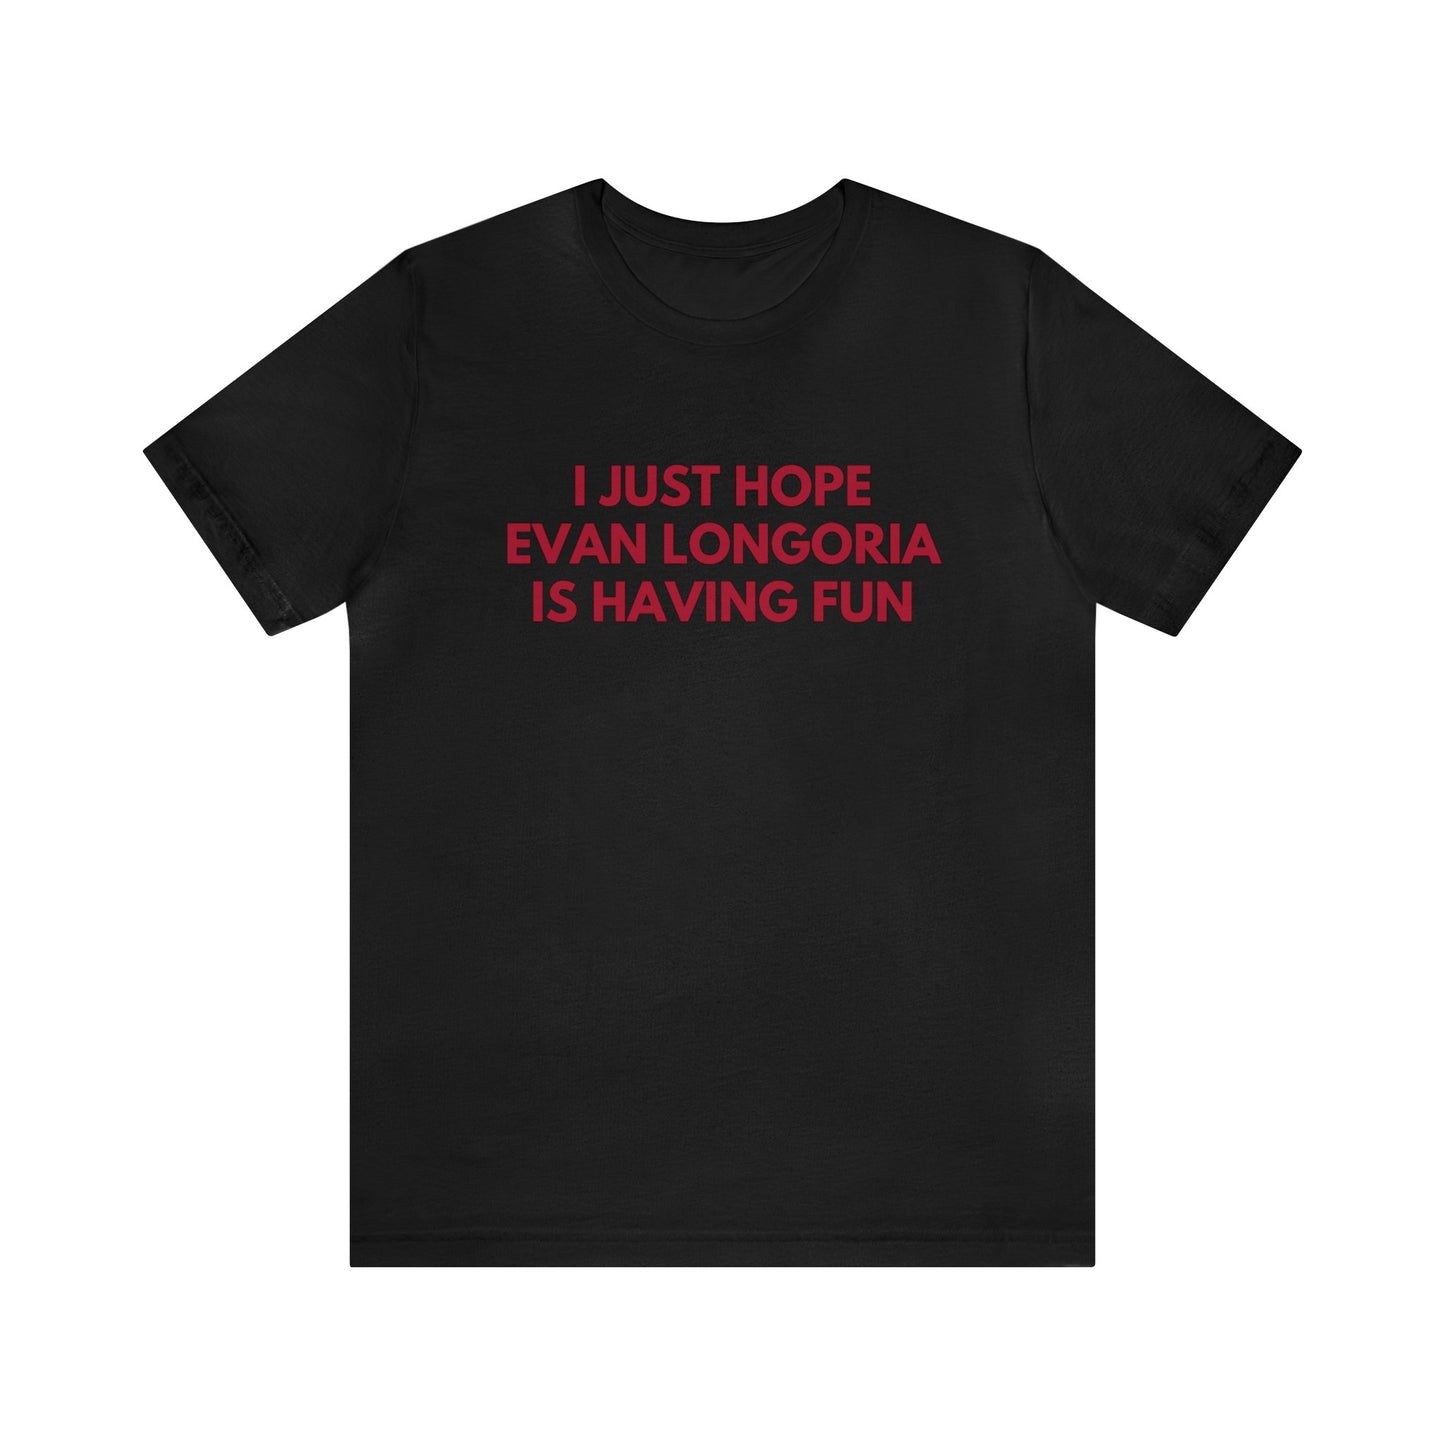 Evan Longoria Having Fun - Unisex T-shirt